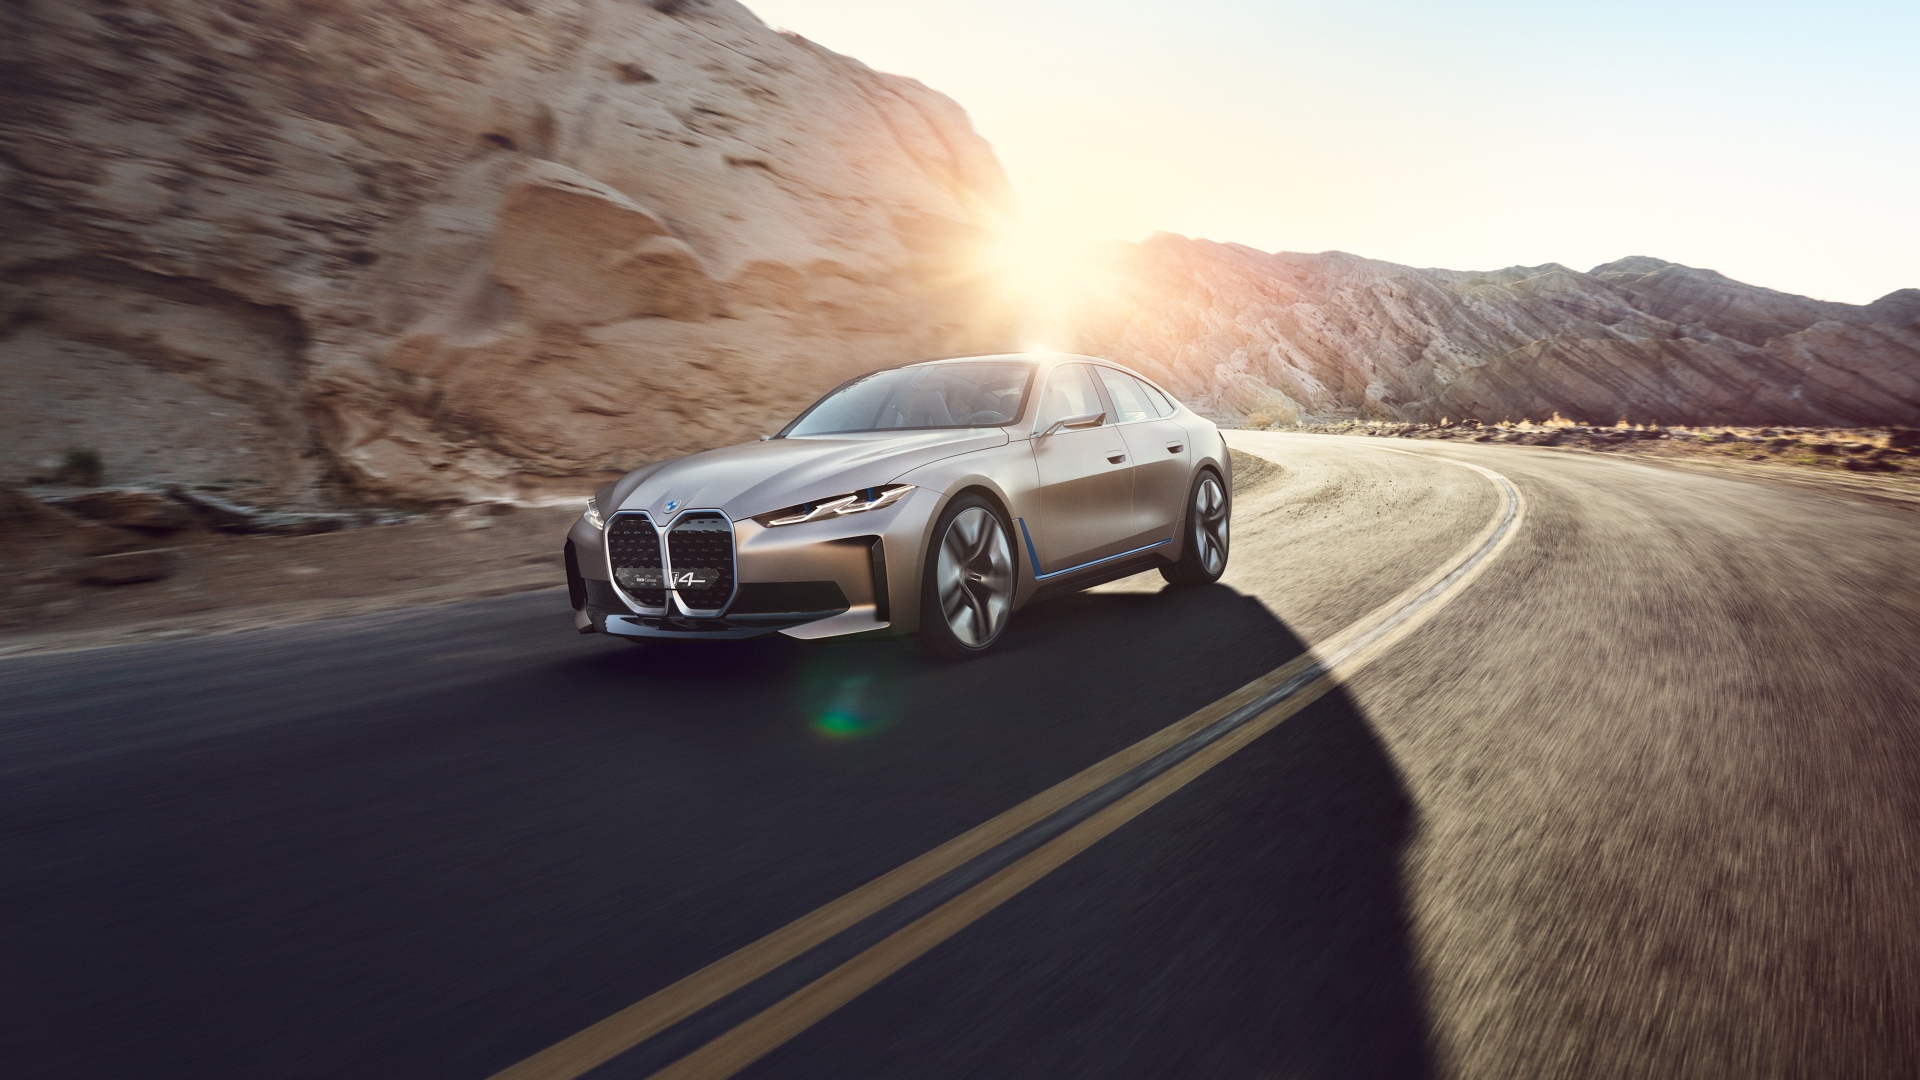 Автомобиль BMW Concept I4 2020 года у гор в лучах солнца